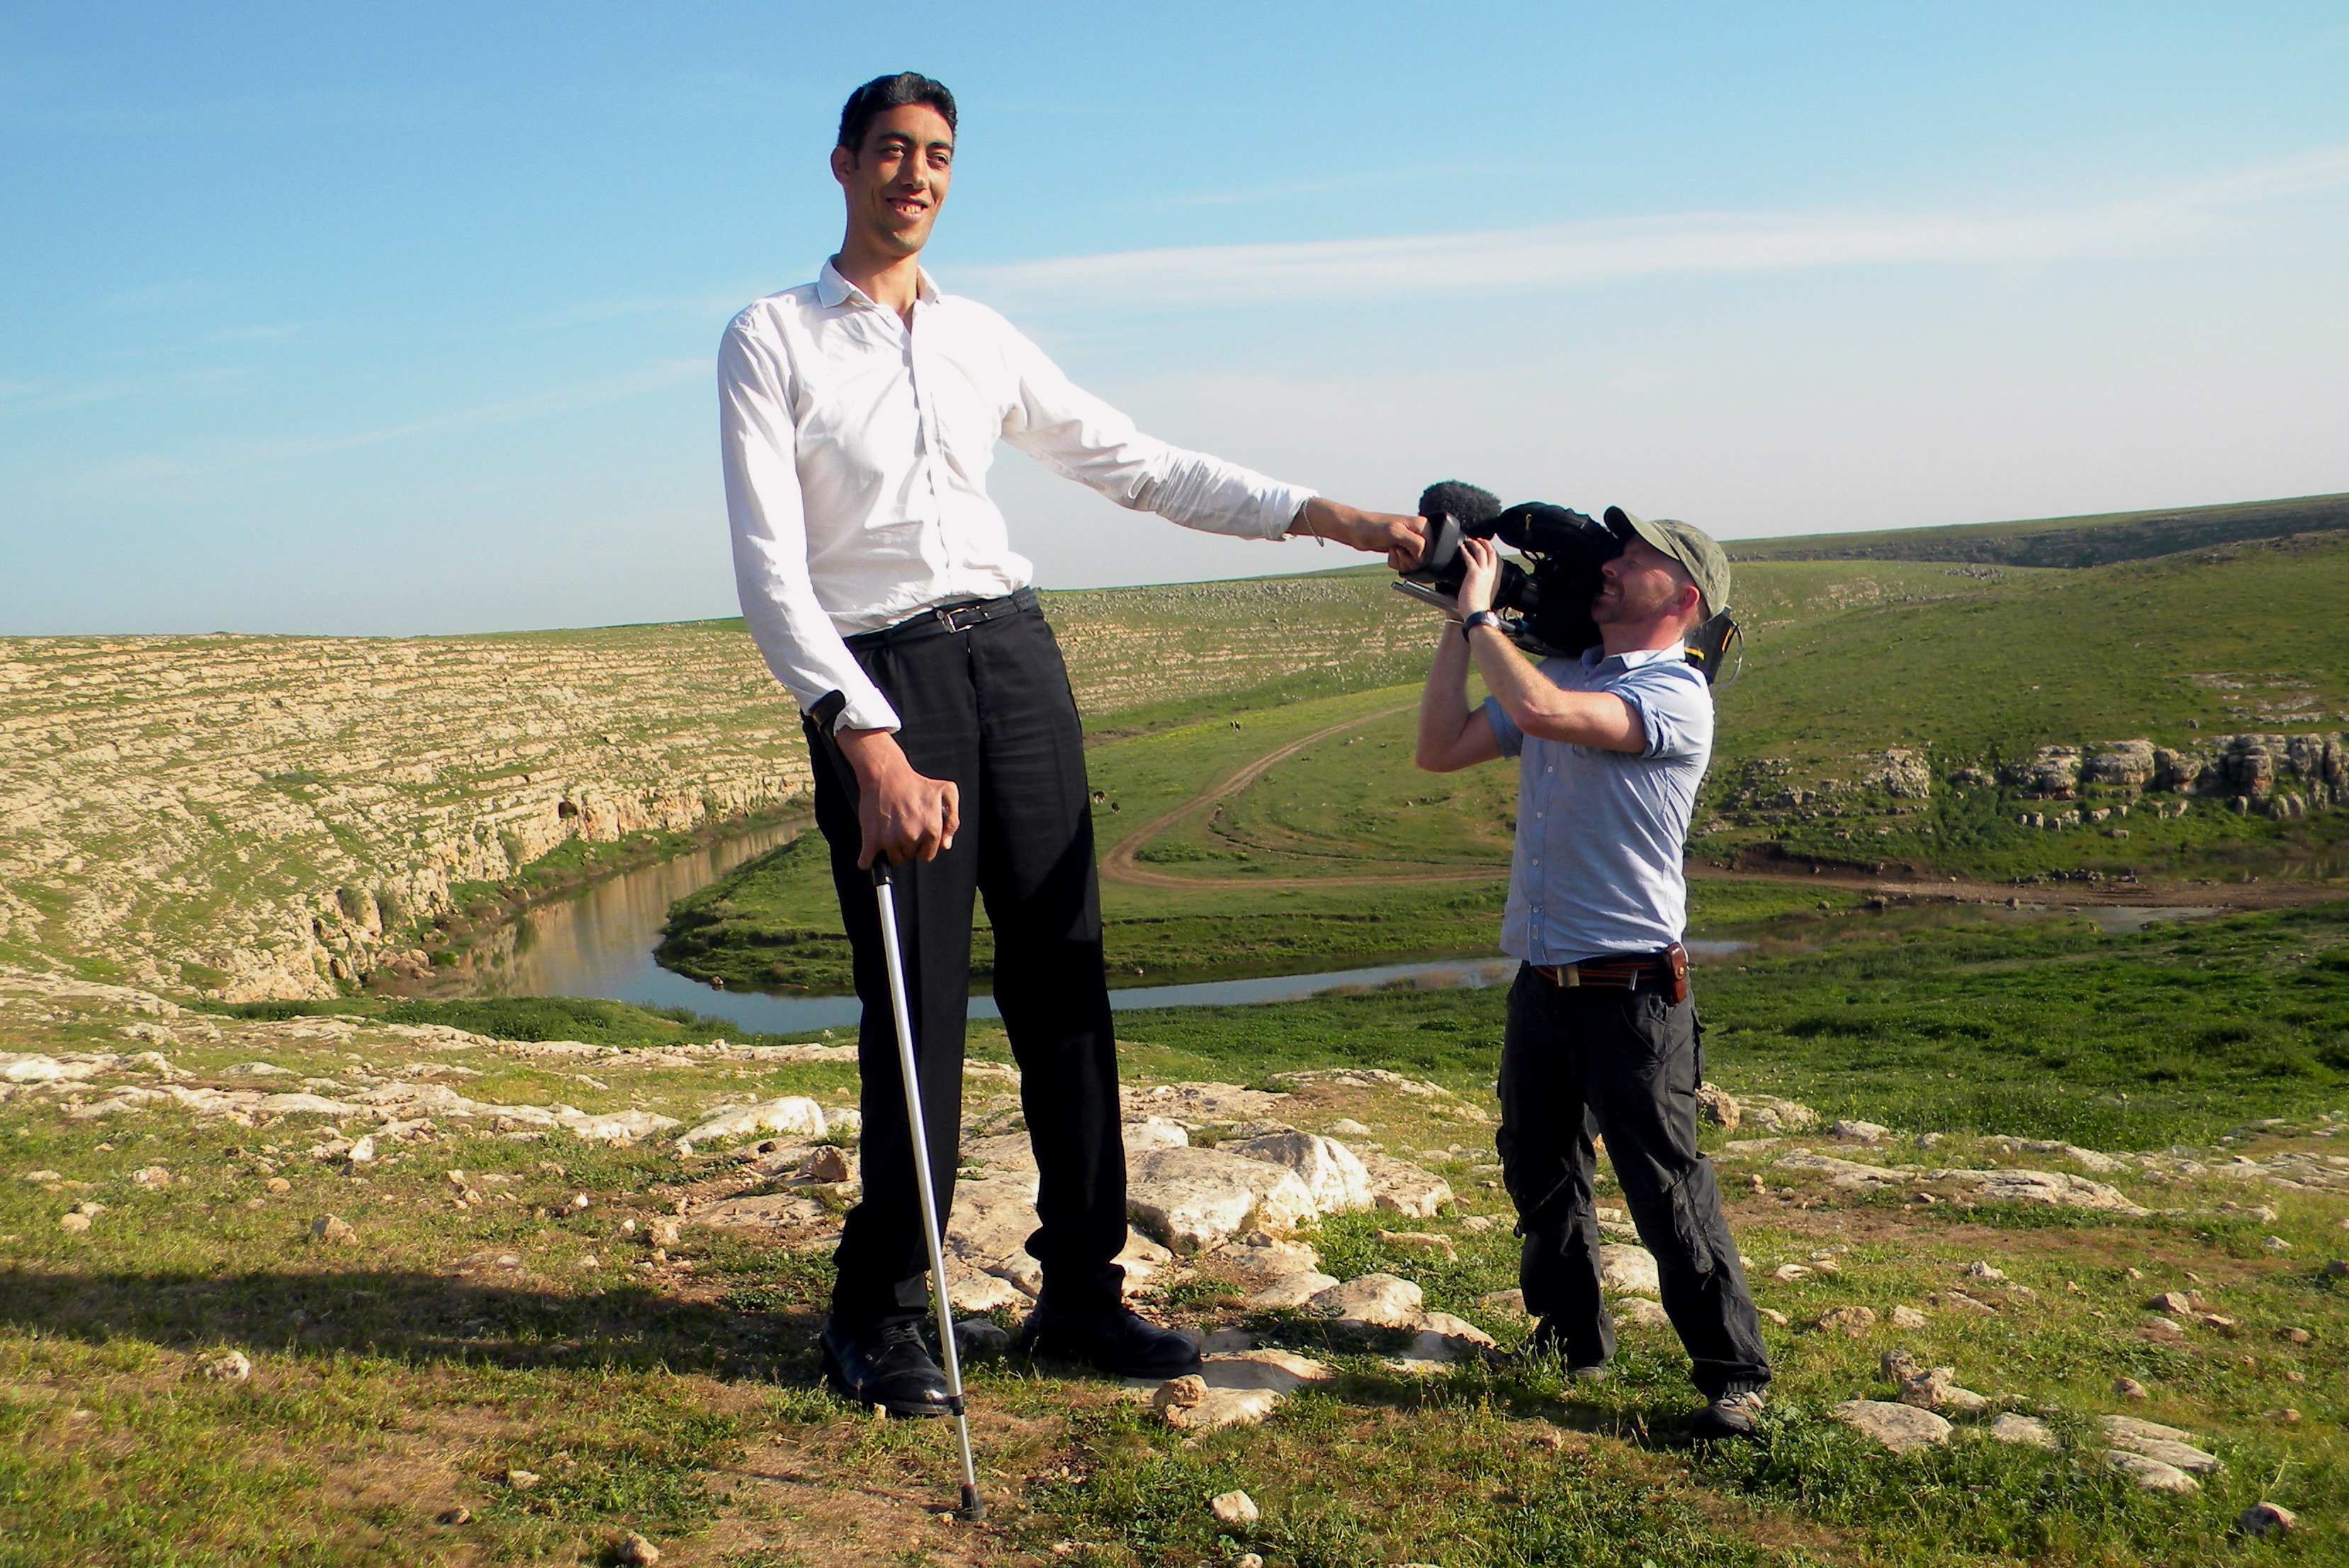 Земля больших людей. Гигантизм рост. Самый высокий человек в Армении. Высокий человек. Высокие люди гиганты.